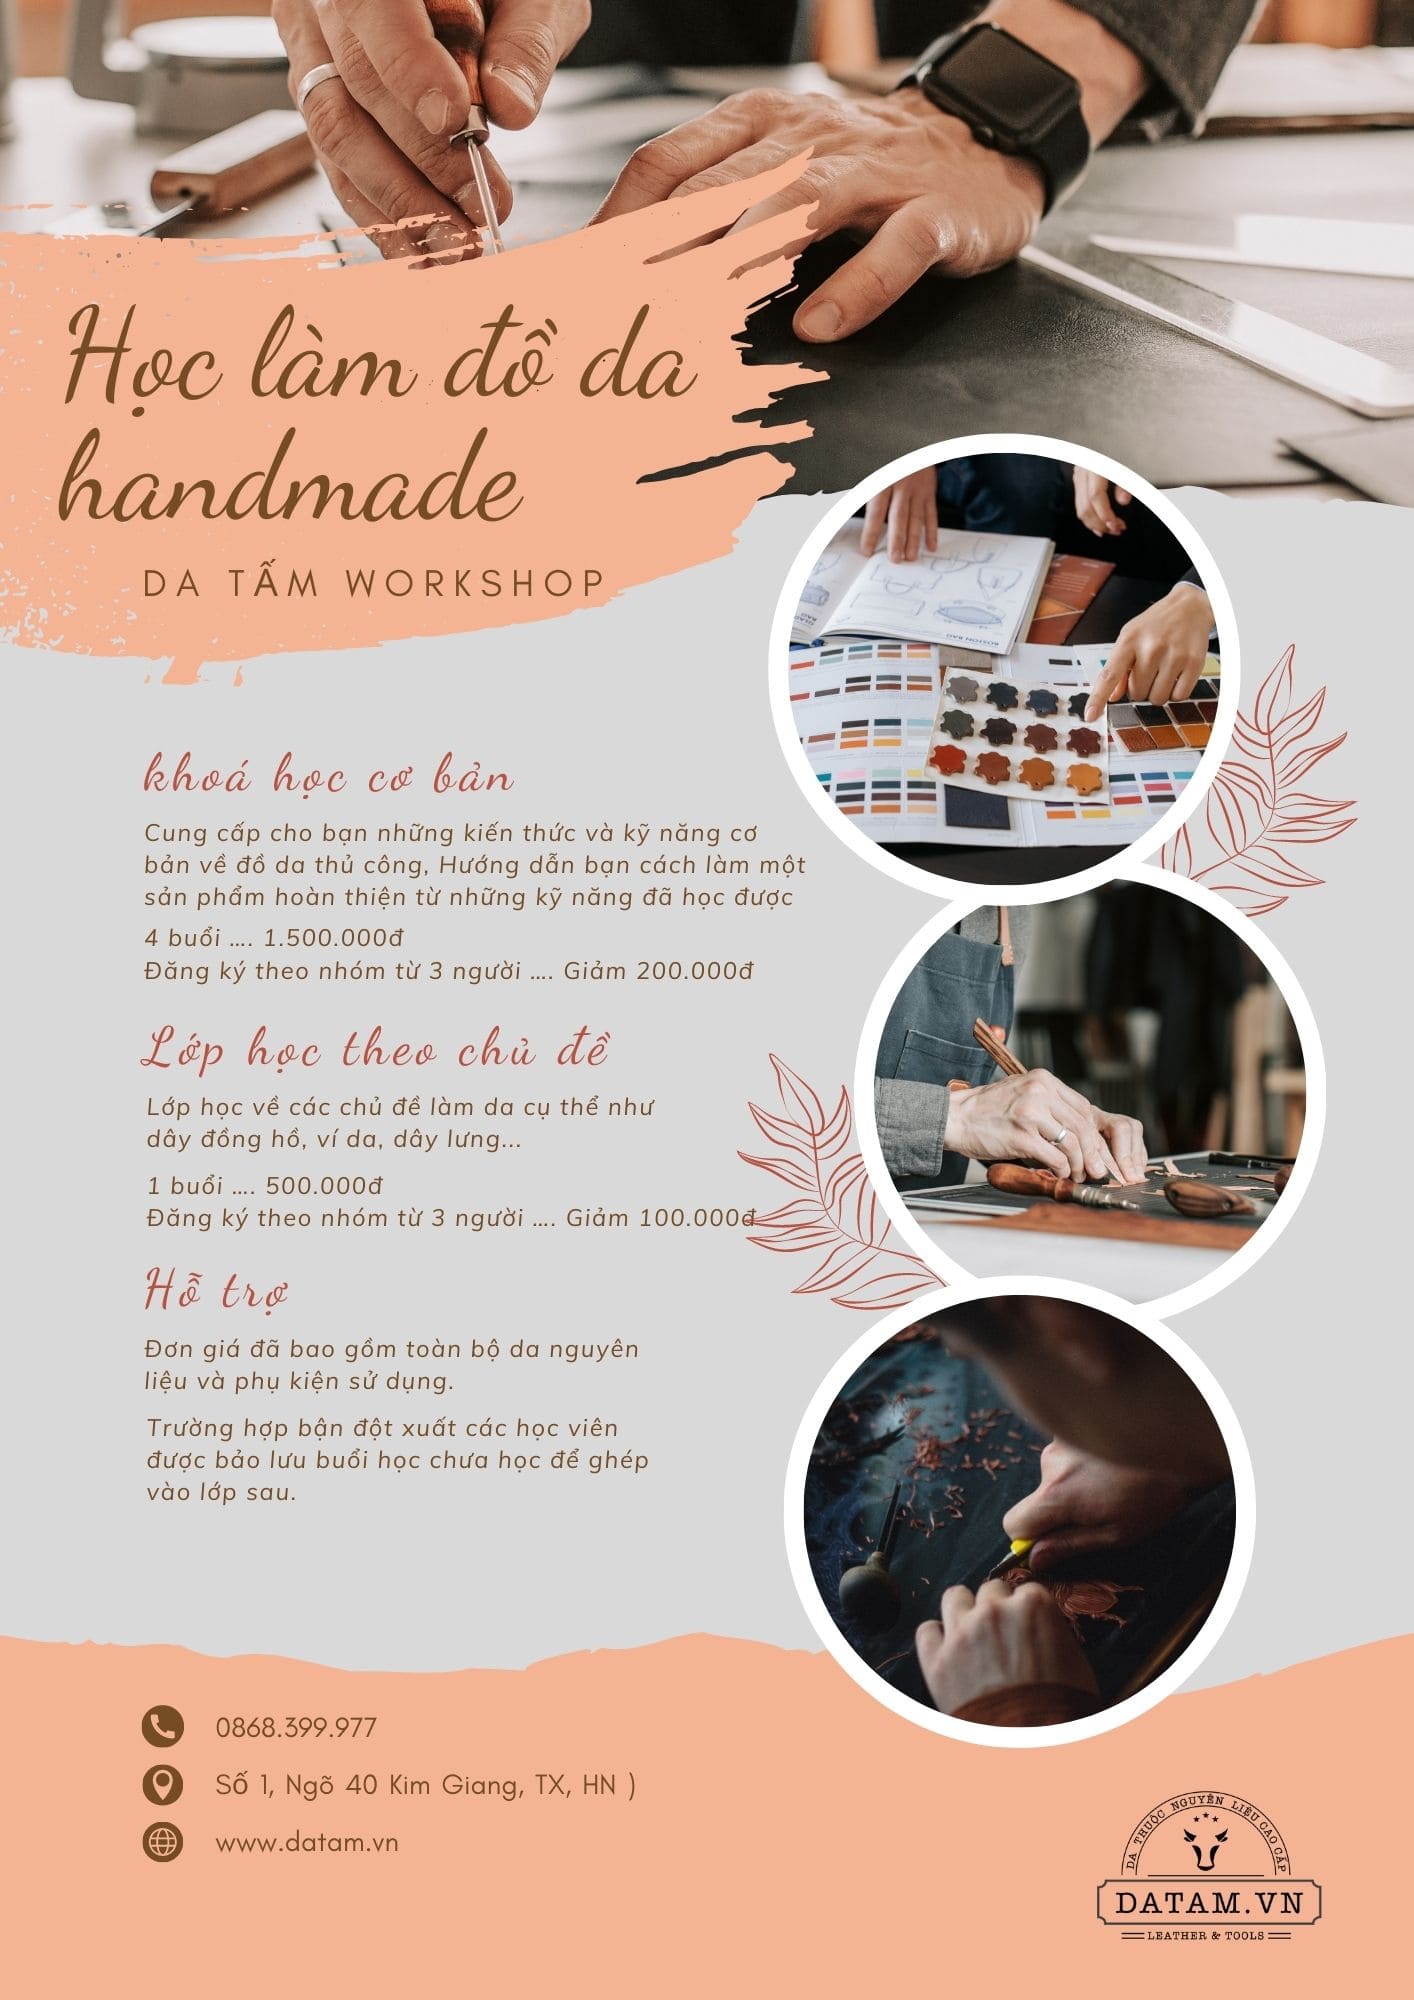 Khoá học từ cơ bản tới nâng cao về làm đồ da thủ công handmade tại Hà Nội